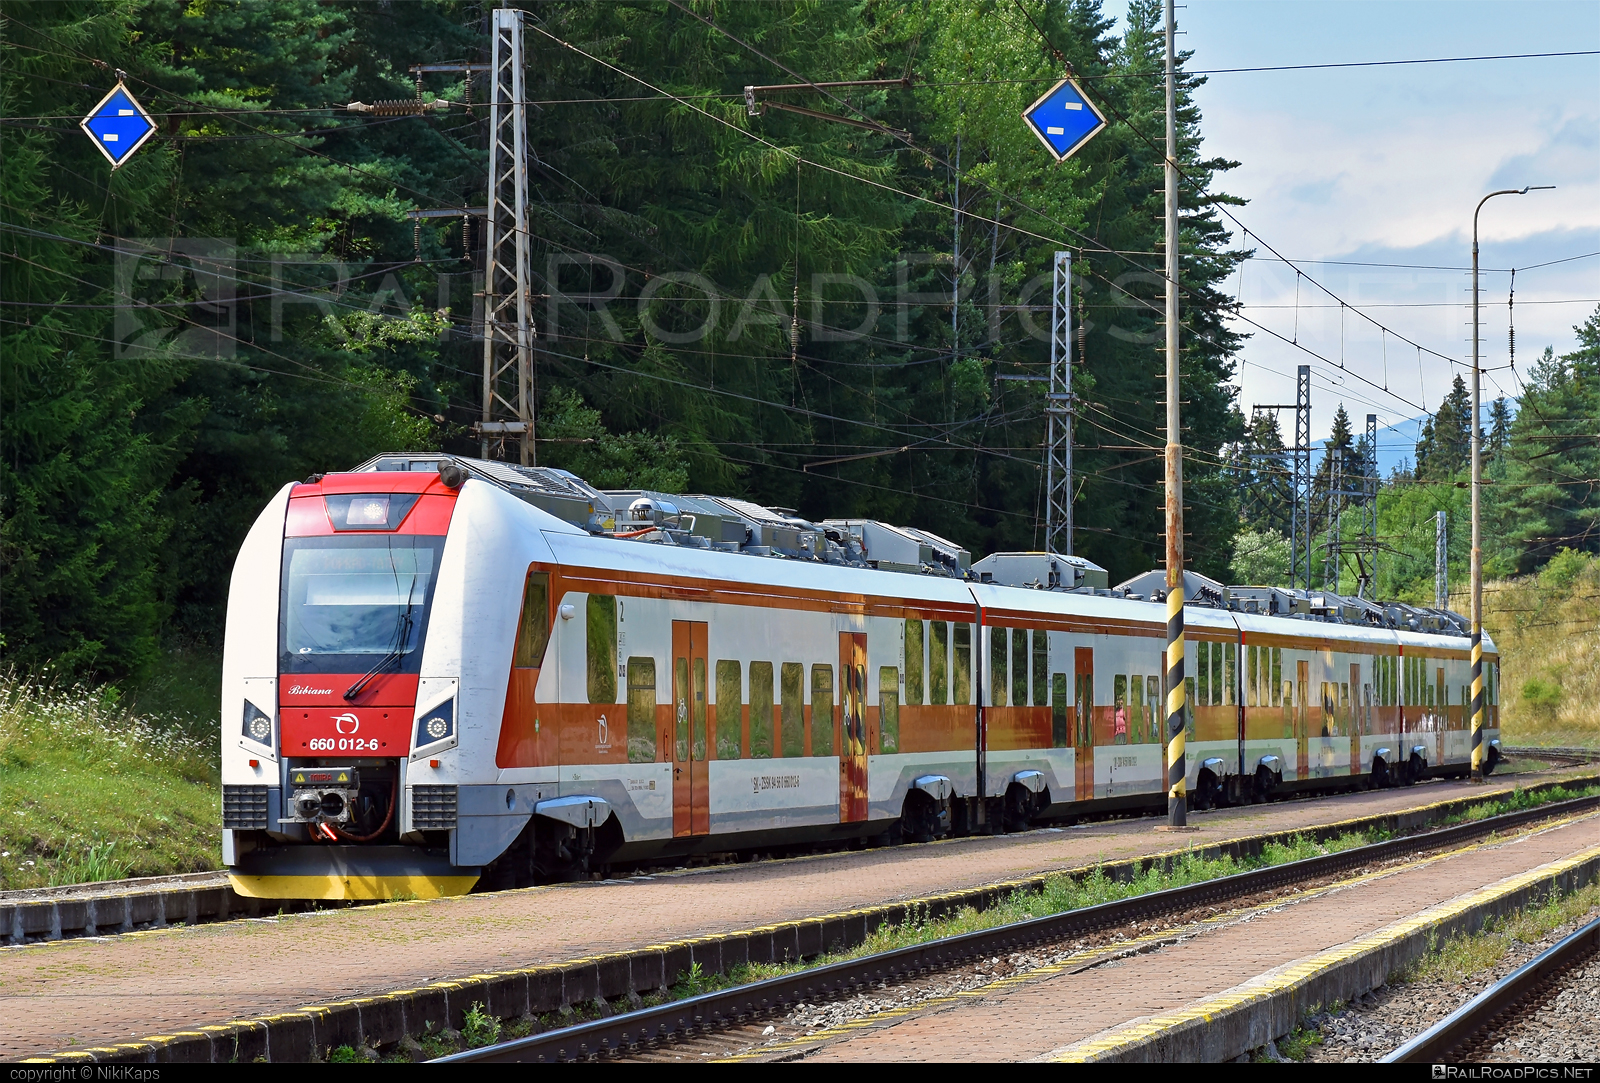 Škoda 14Ev RegioPanter - 660 012-6 operated by Železničná Spoločnost' Slovensko, a.s. #ZeleznicnaSpolocnostSlovensko #regiopanter #skoda #skoda14ev #zssk